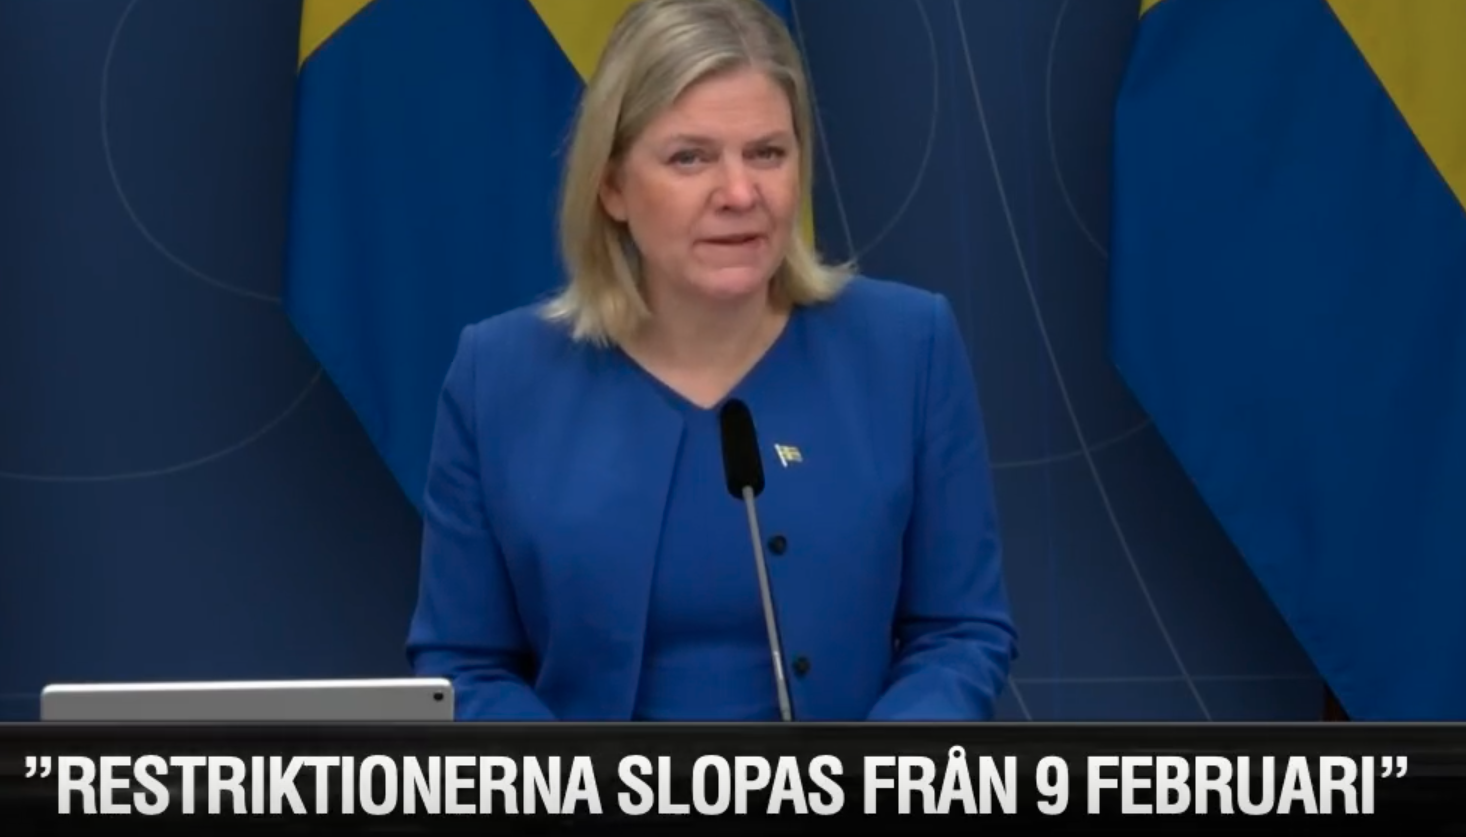 sStatsminister Magdalena Andersson under pressträffen.